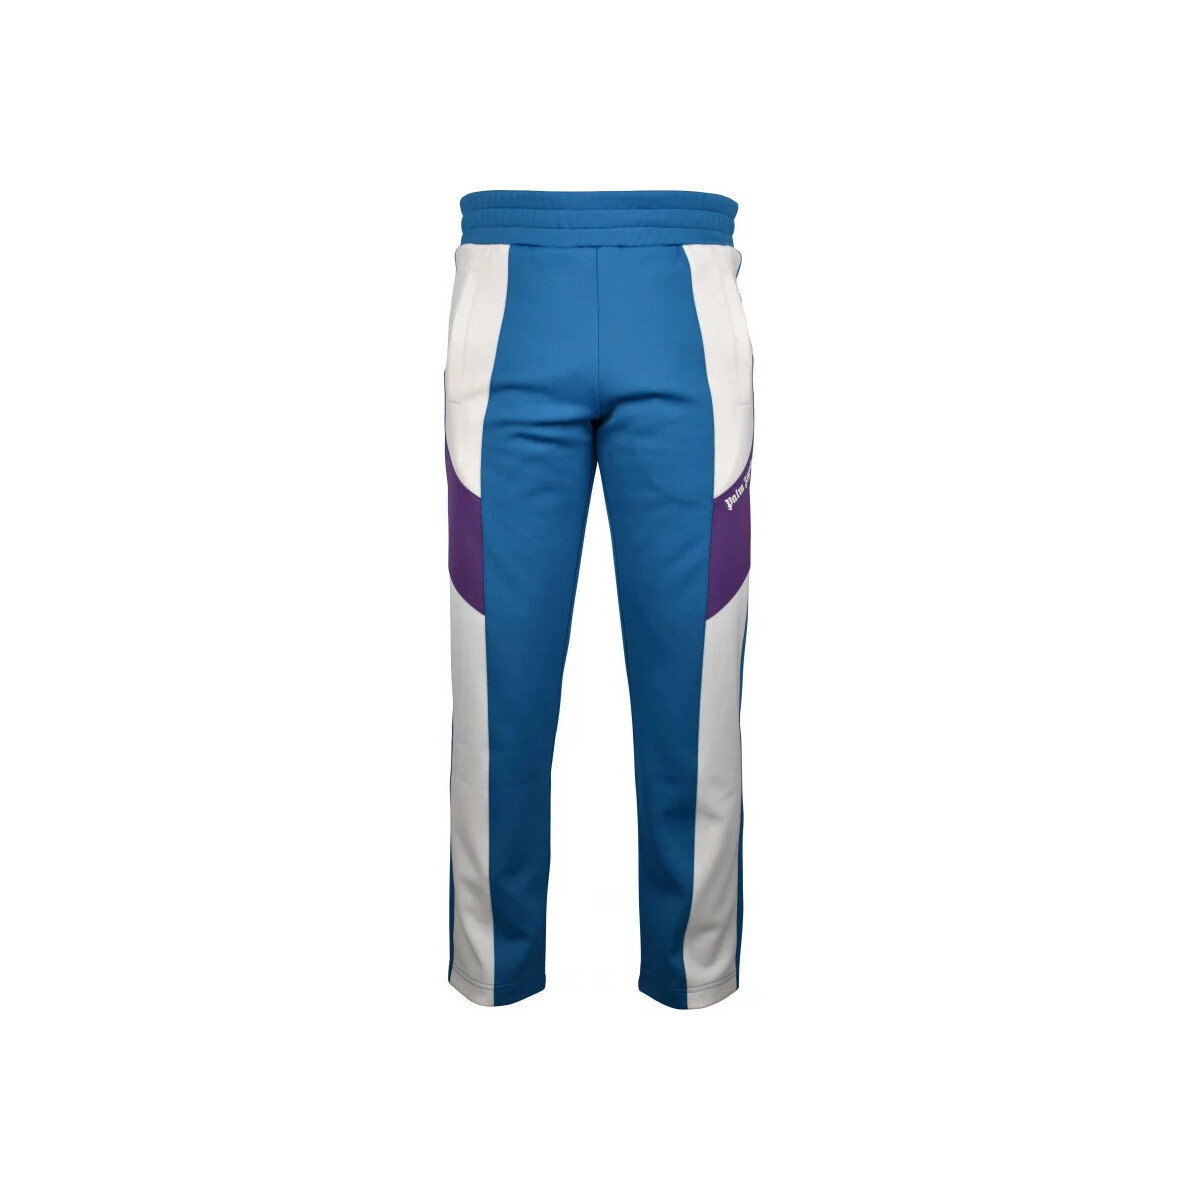 Vêtements Homme Pantalons de survêtement Palm Angels Jogging Bleu